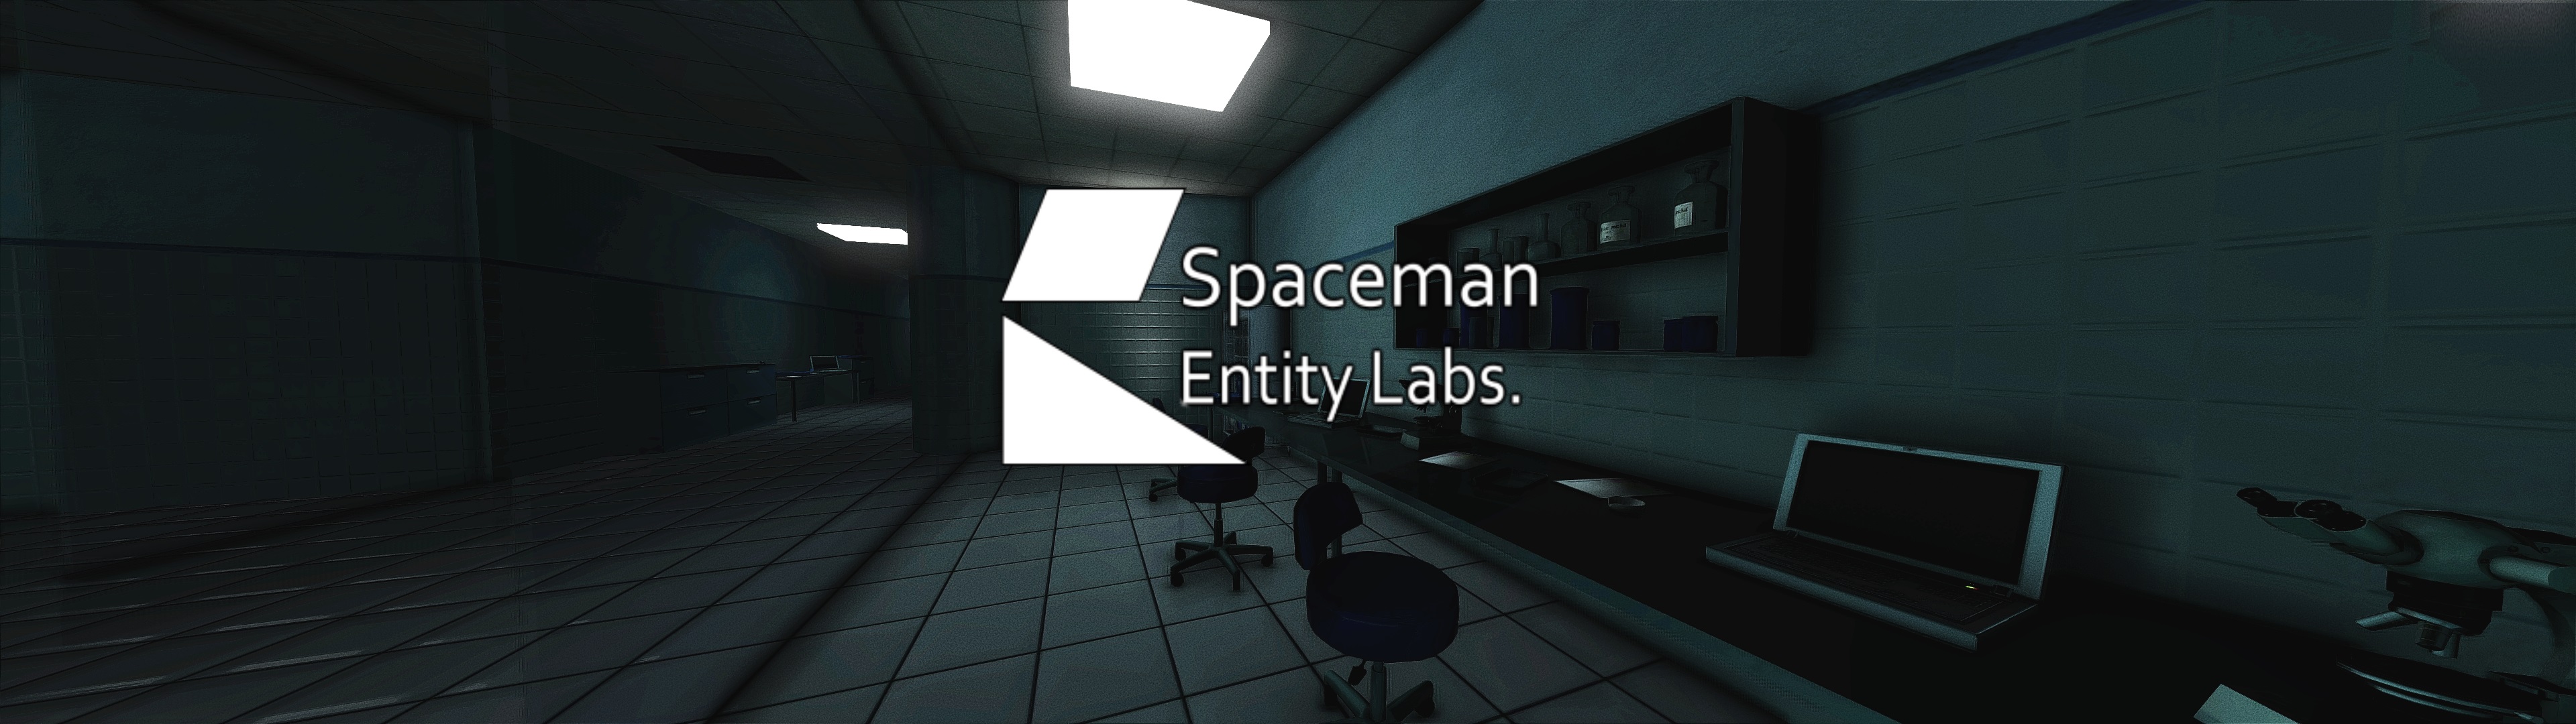 Der Schweinemann: Spaceman Labs (part3)